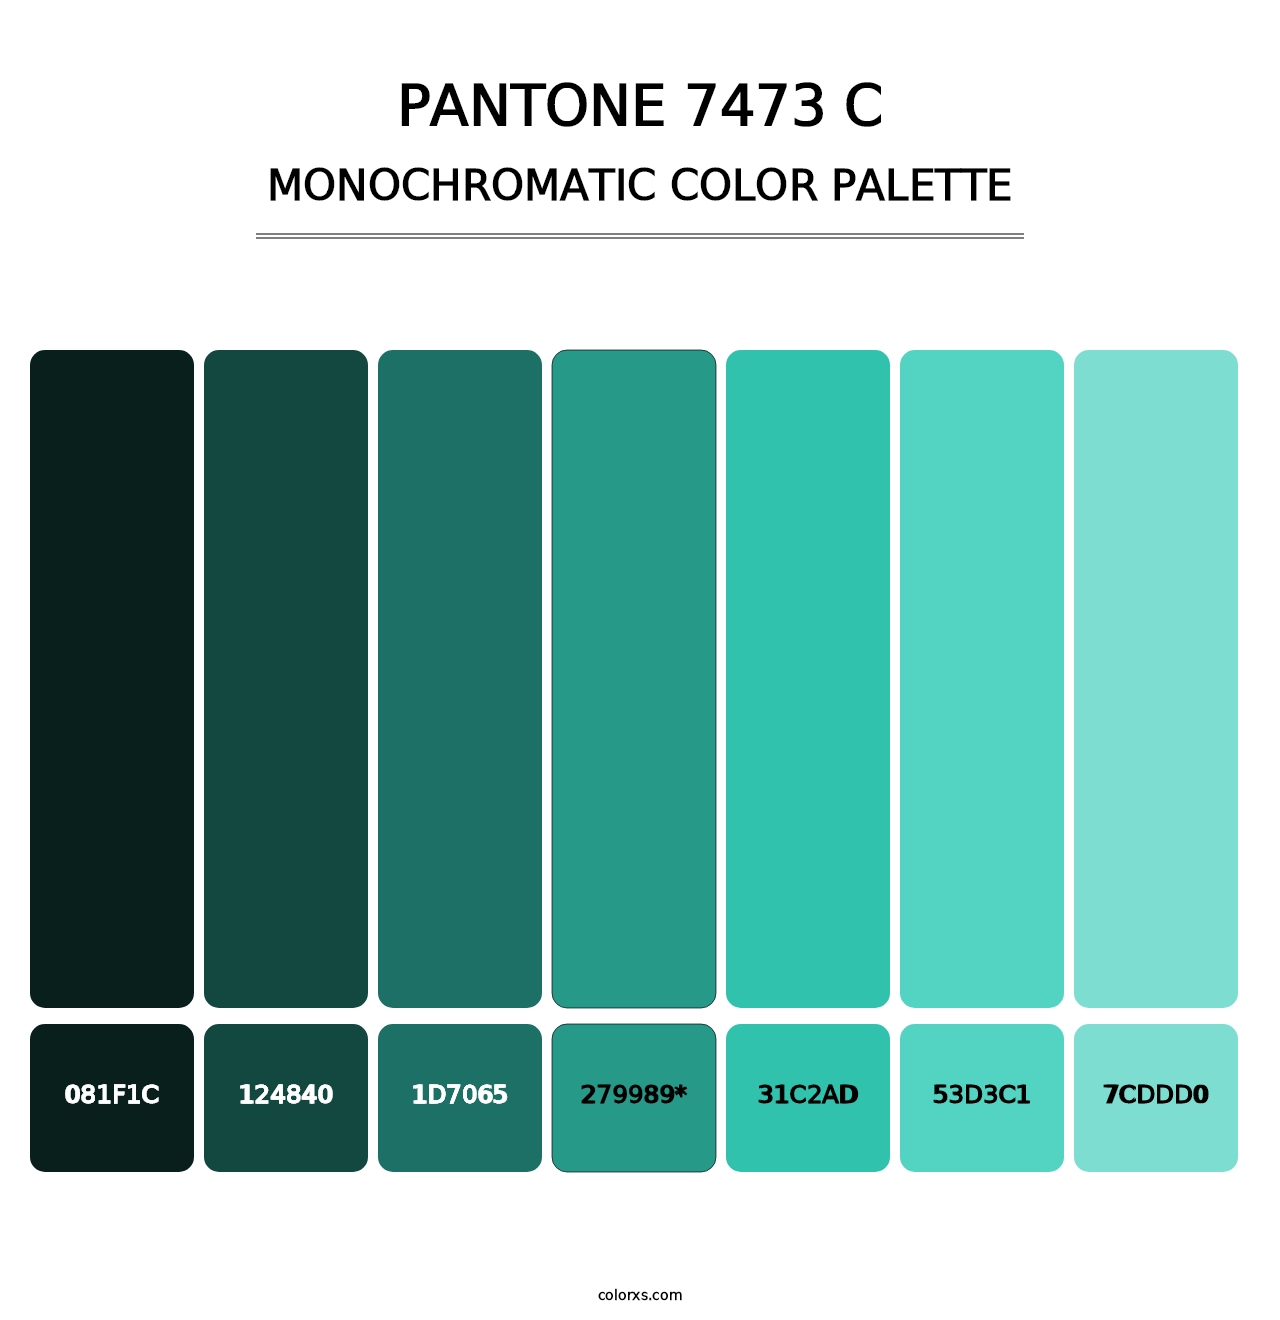 PANTONE 7473 C - Monochromatic Color Palette